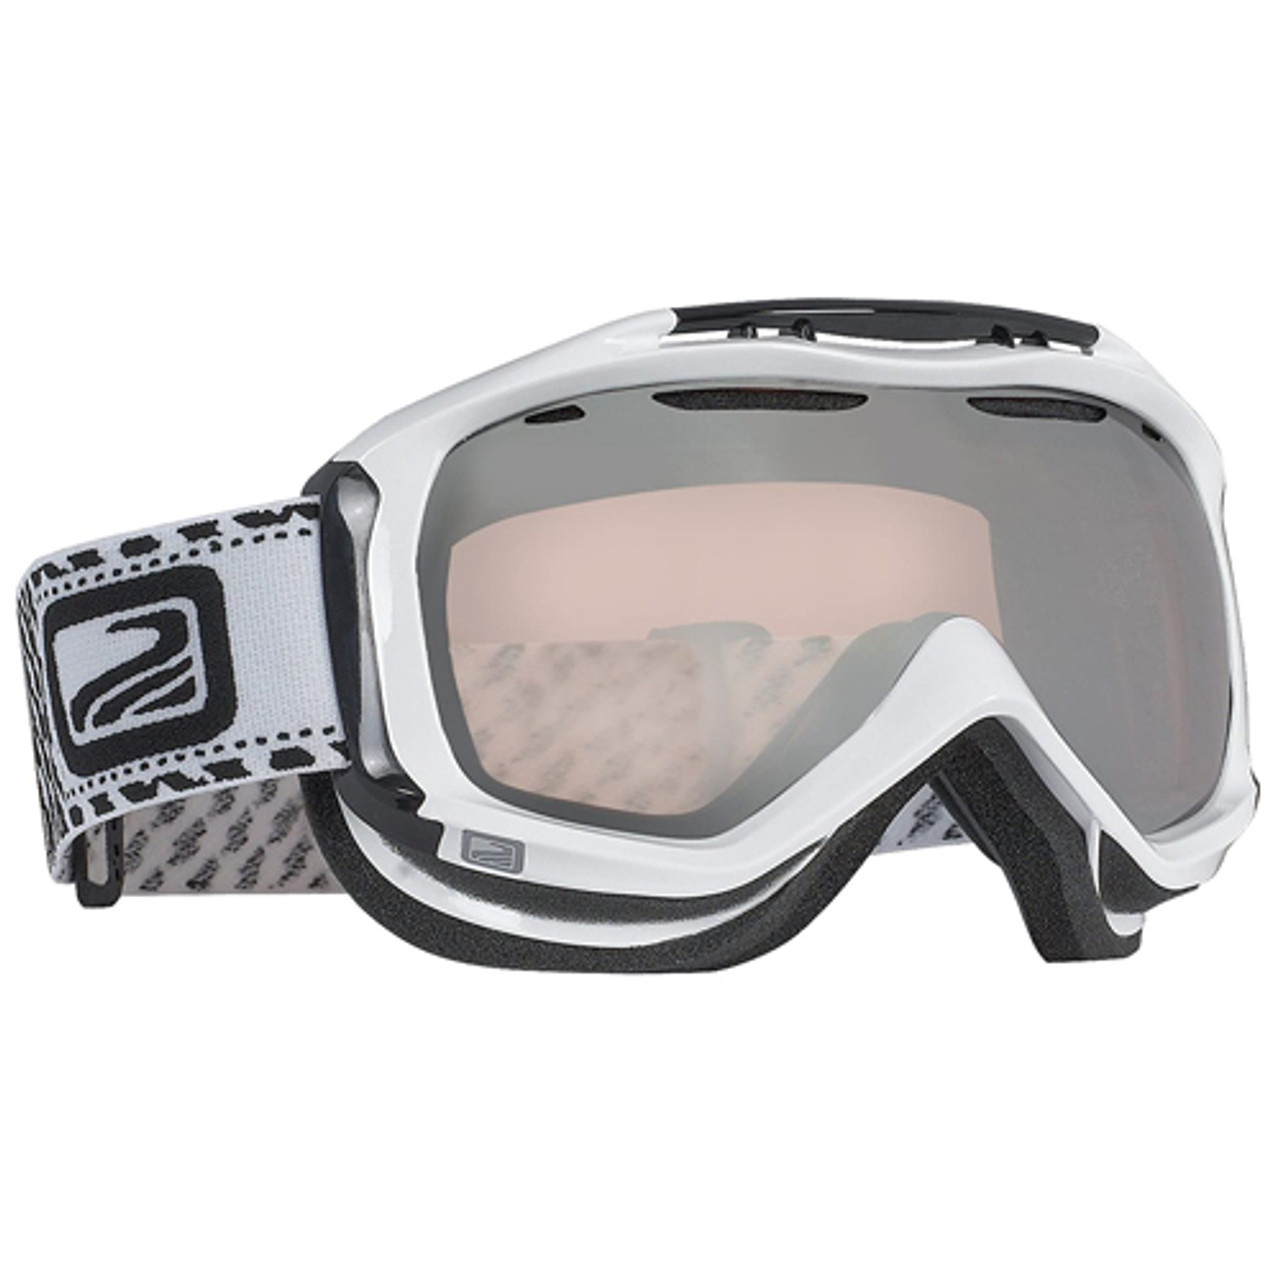 Spare lenses for Scott Broker ski goggles